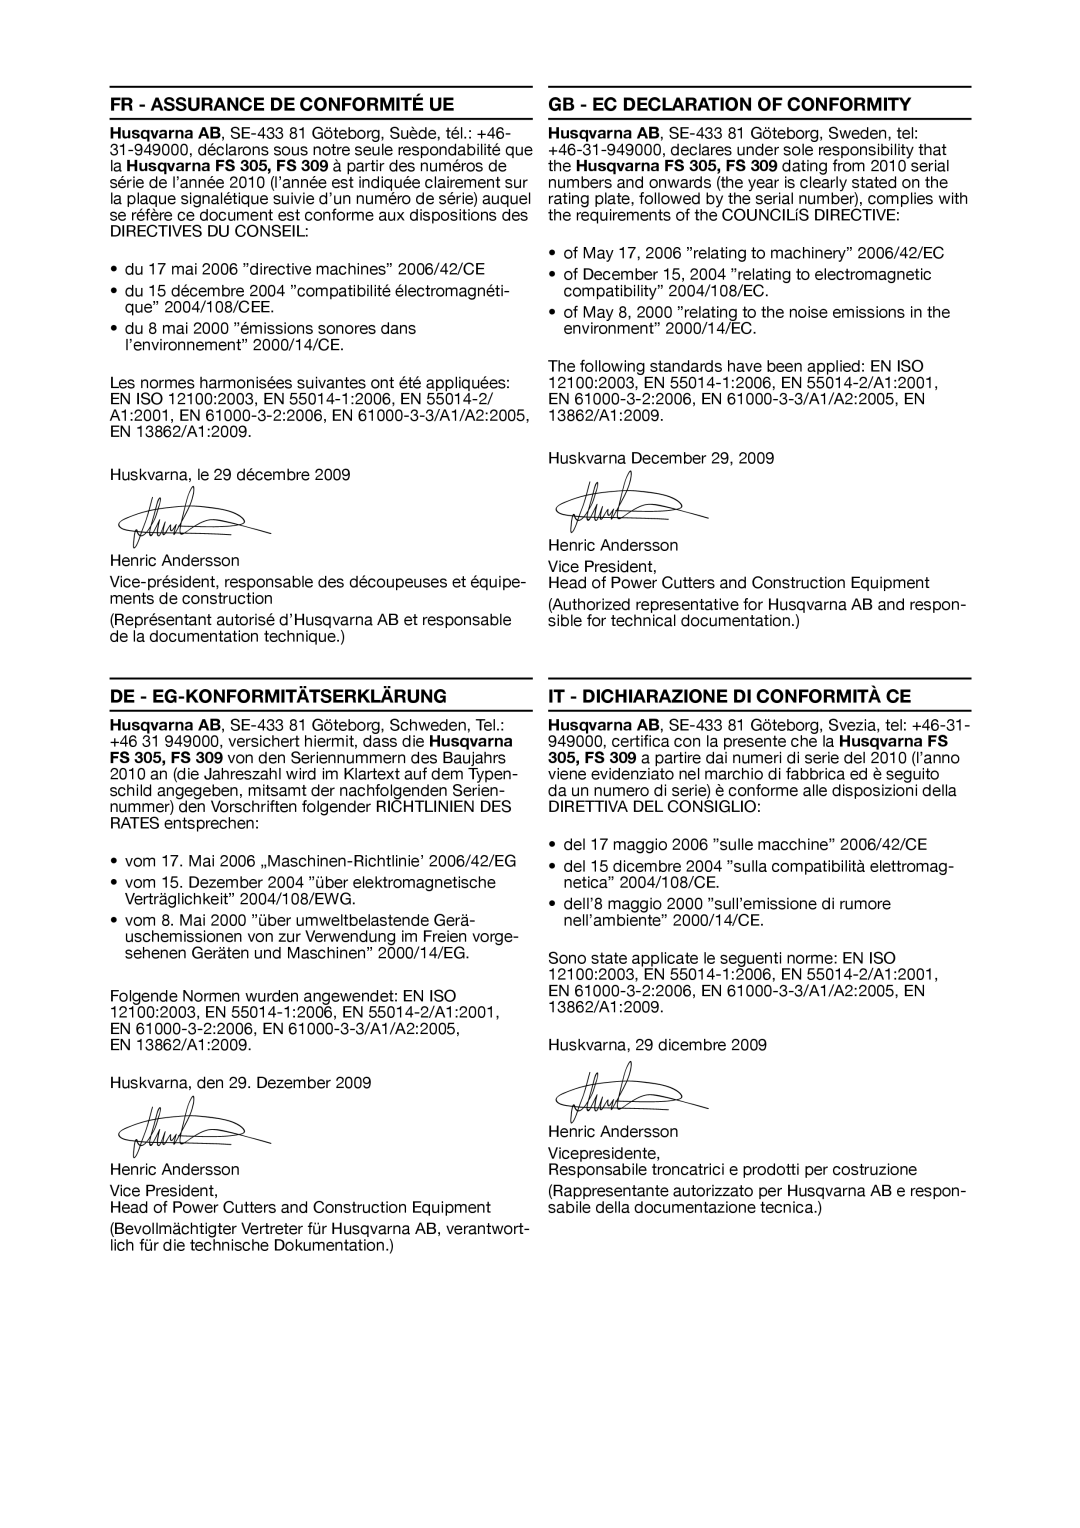 Husqvarna FS309, FS 305 Fr - Assurance De Conformité Ue, Gb - Ec Declaration Of Conformity, De - Eg-Konformitätserklärung 